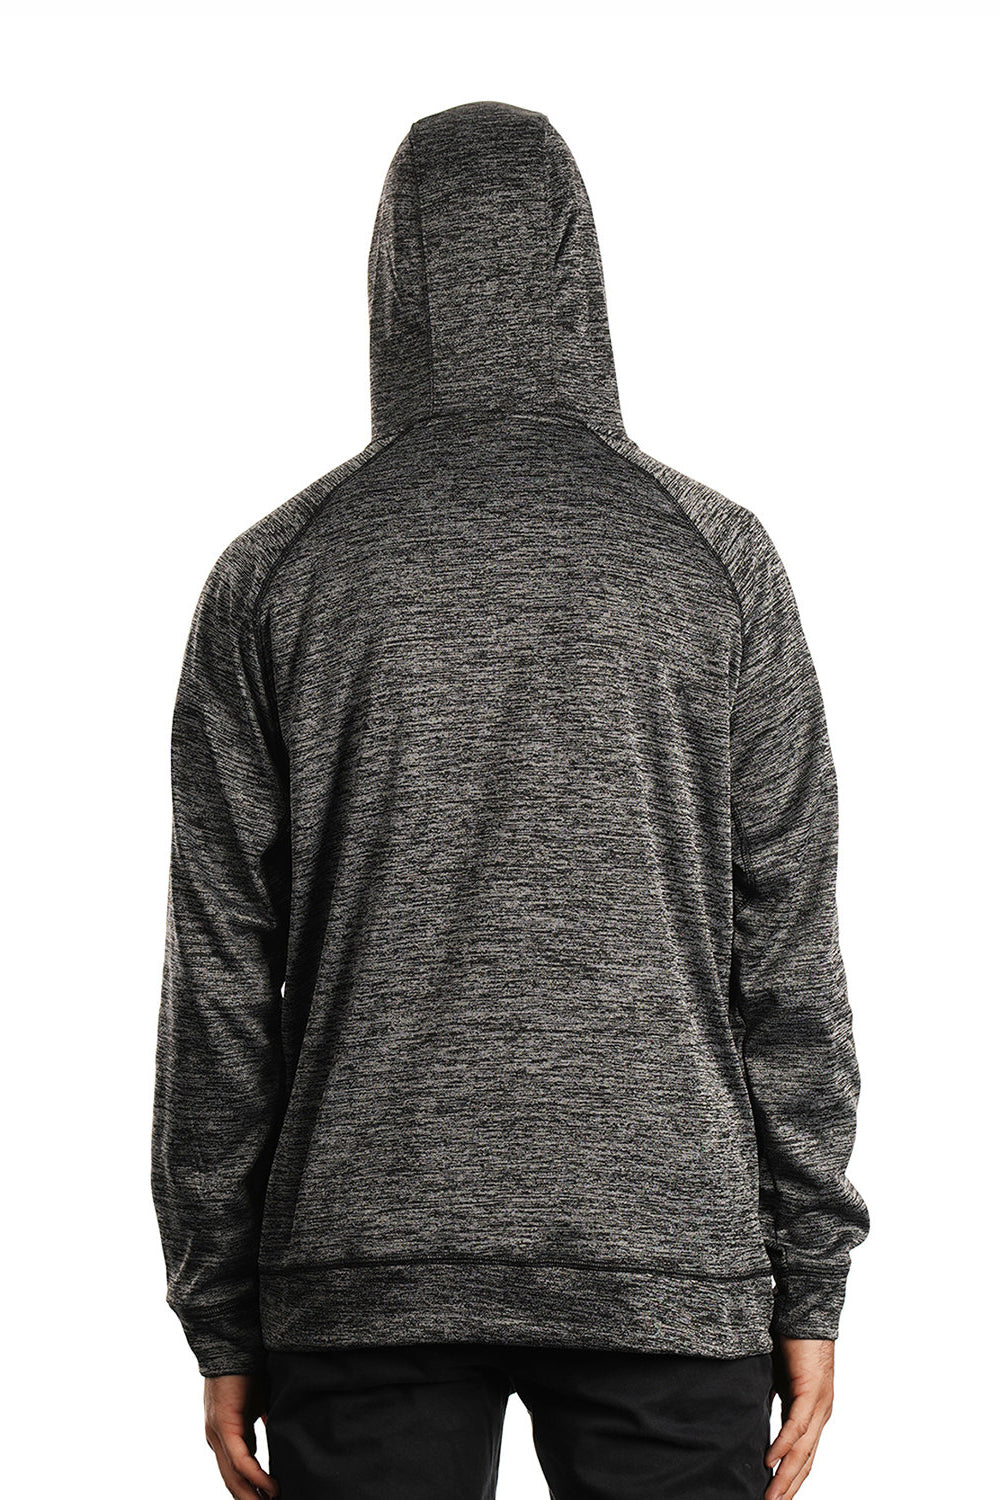 Burnside 8670 Mens Performance Raglan Hooded Sweatshirt Hoodie Heather Charcoal Grey Model Back